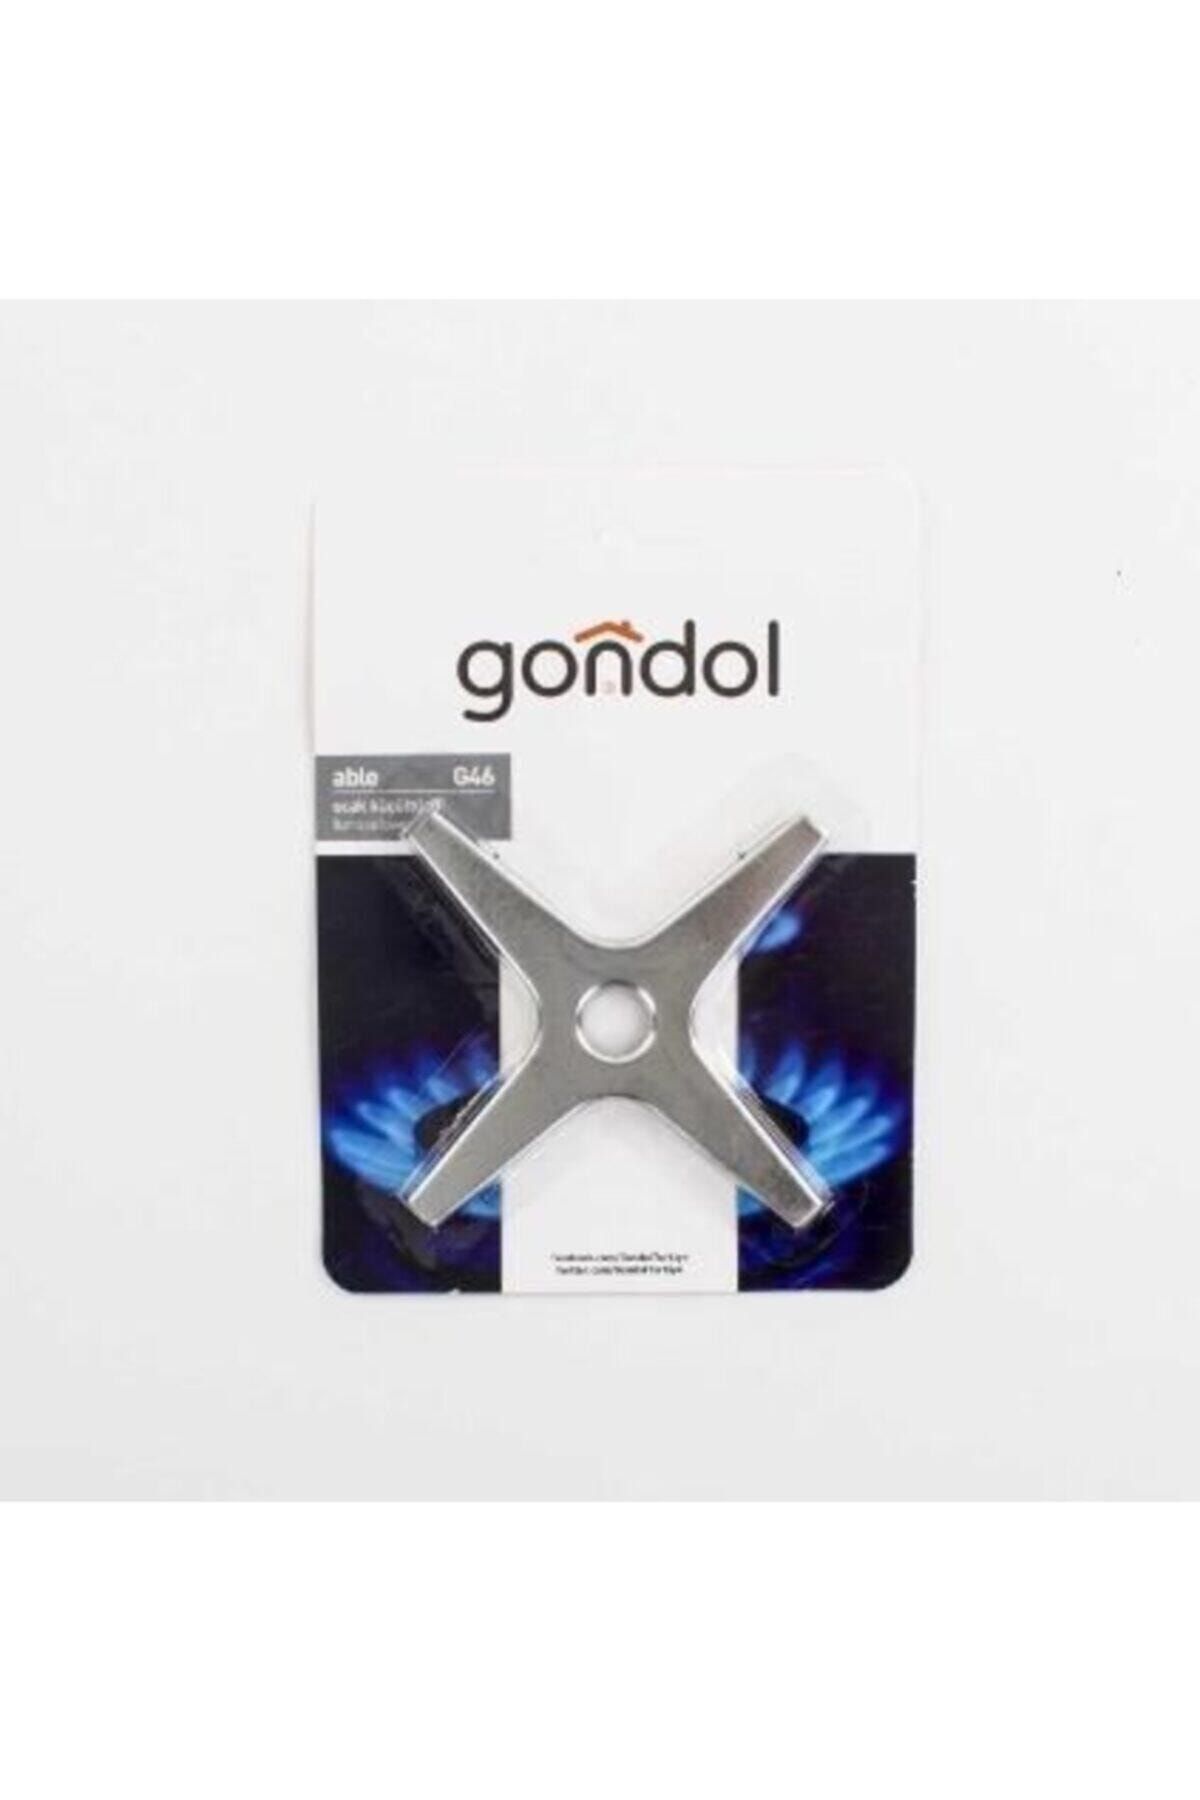 Gondol G-46 Ocak Küçültücü Paslanmaz Tüm Gazlı Ocaklarla Uyumludur Markalı Ürün